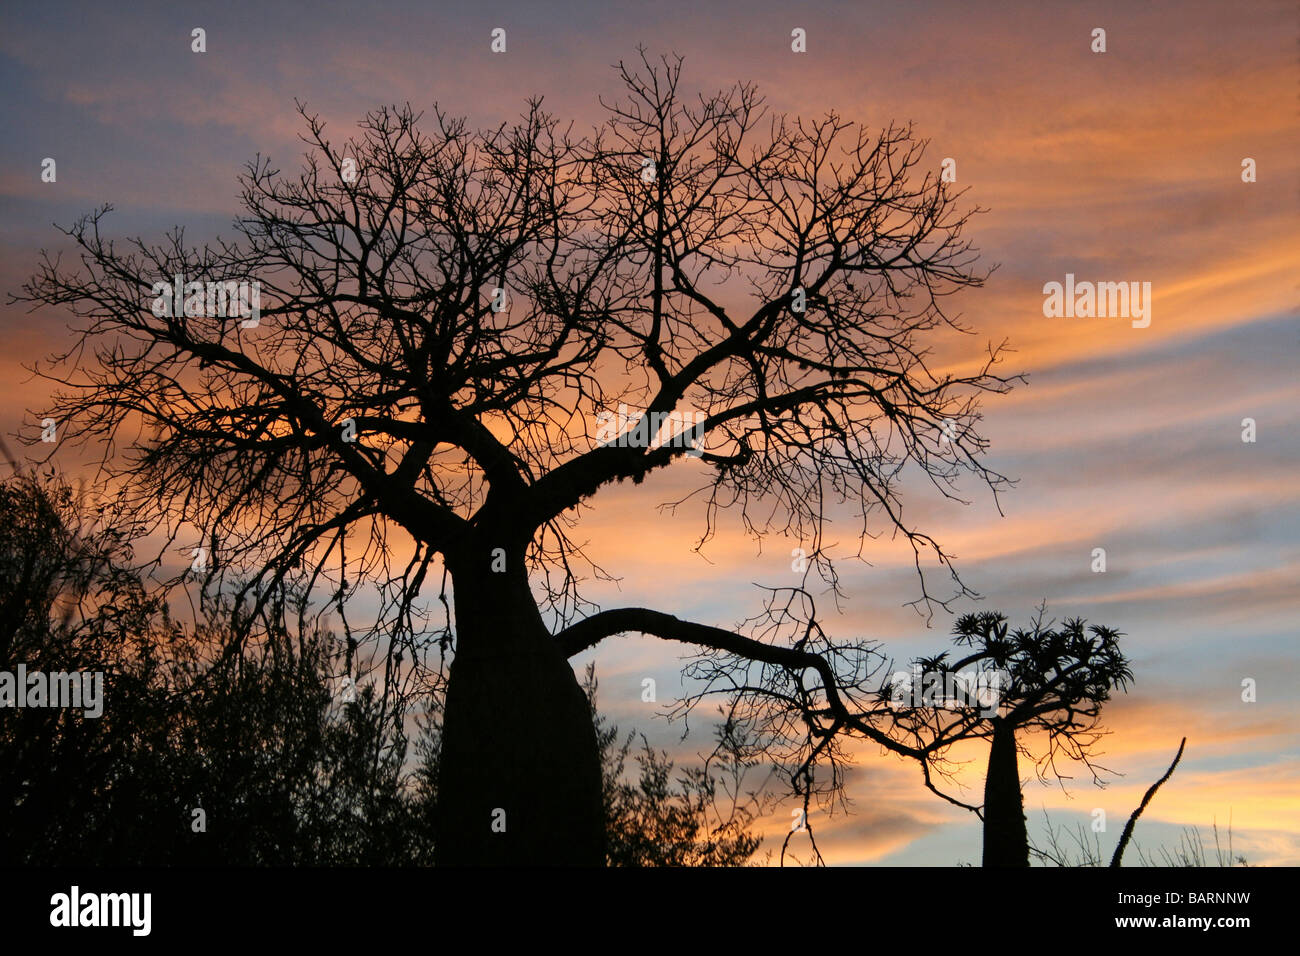 Les baobabs en silhouette au lever du soleil, Forêt épineuse, Ifaty, Madagascar Banque D'Images